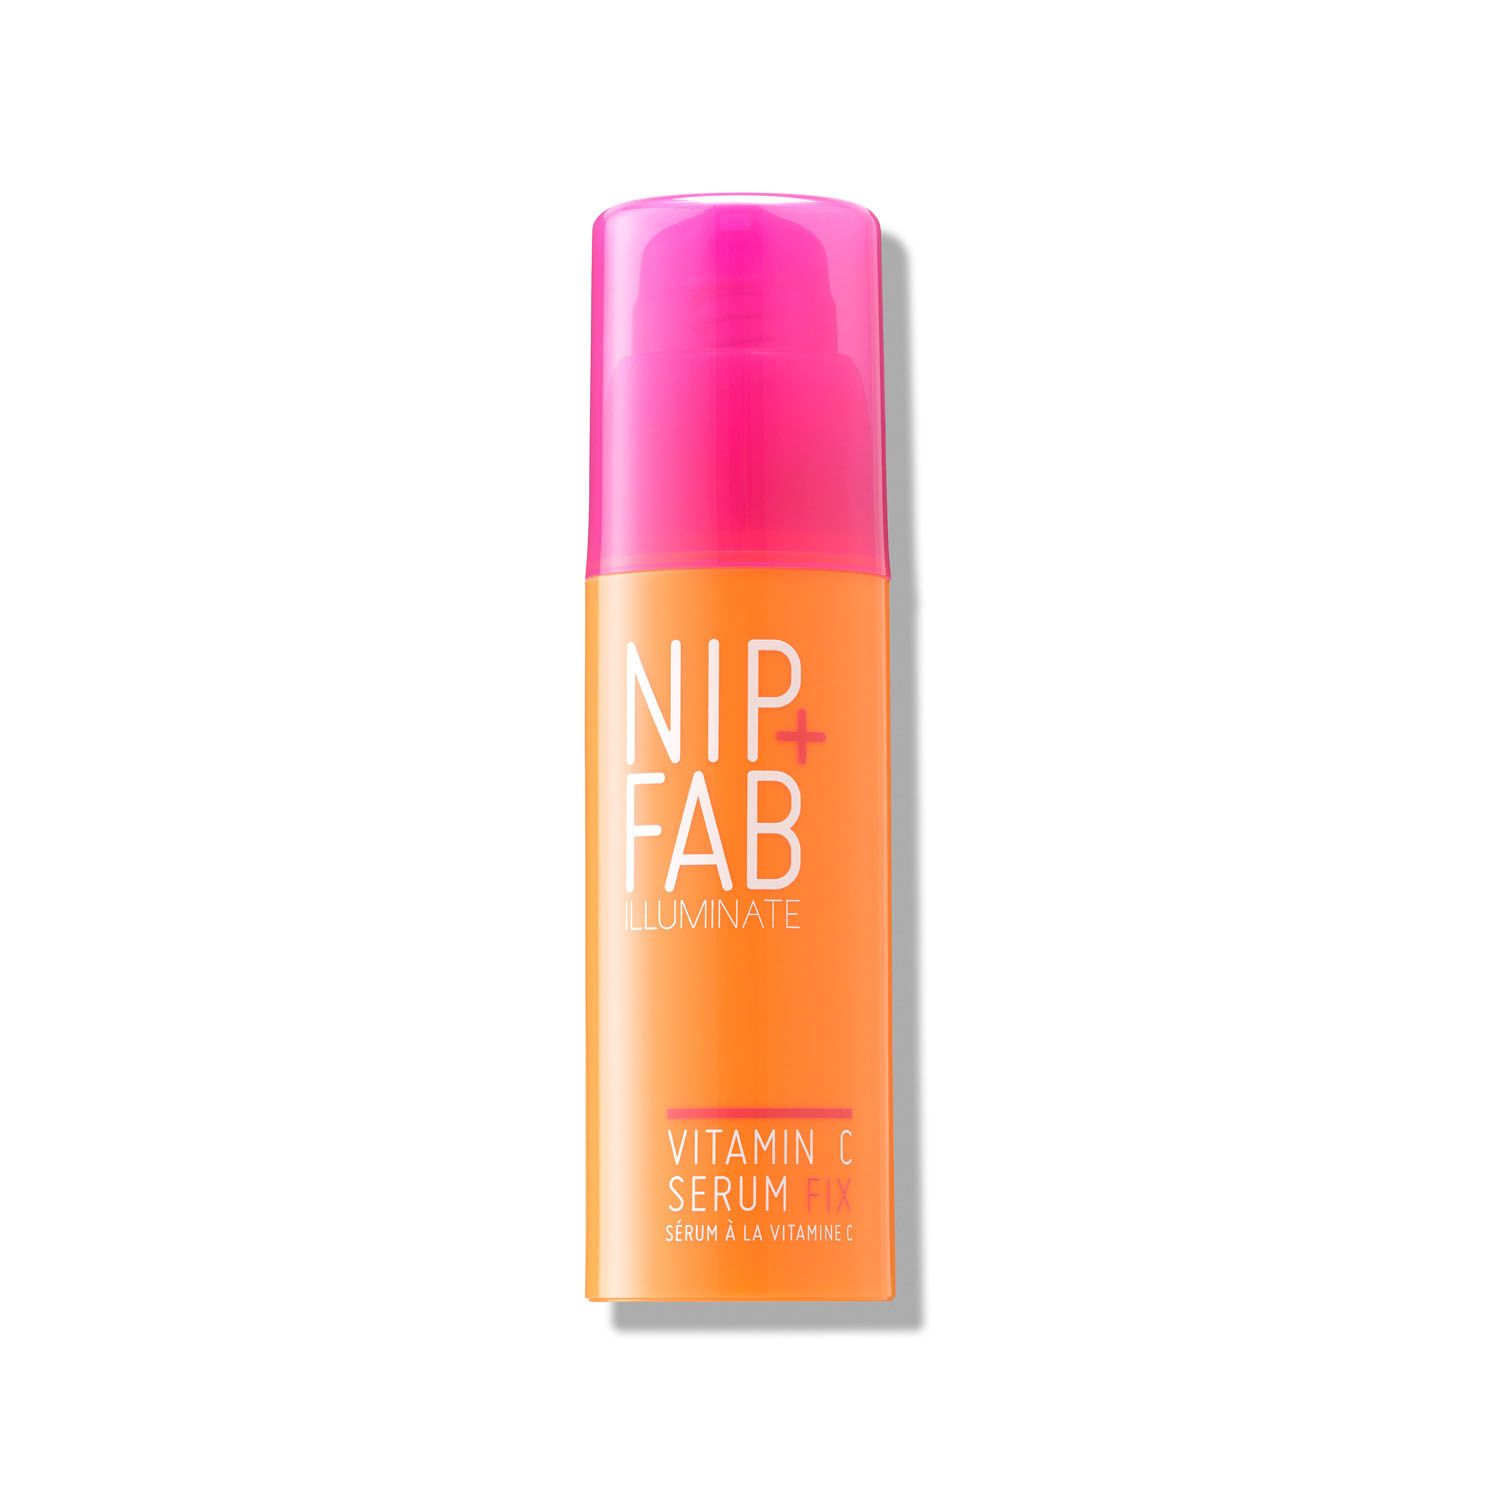 Nip+fab Illuminate Vitamin C Fix Siero Viso Illuminante 50ml